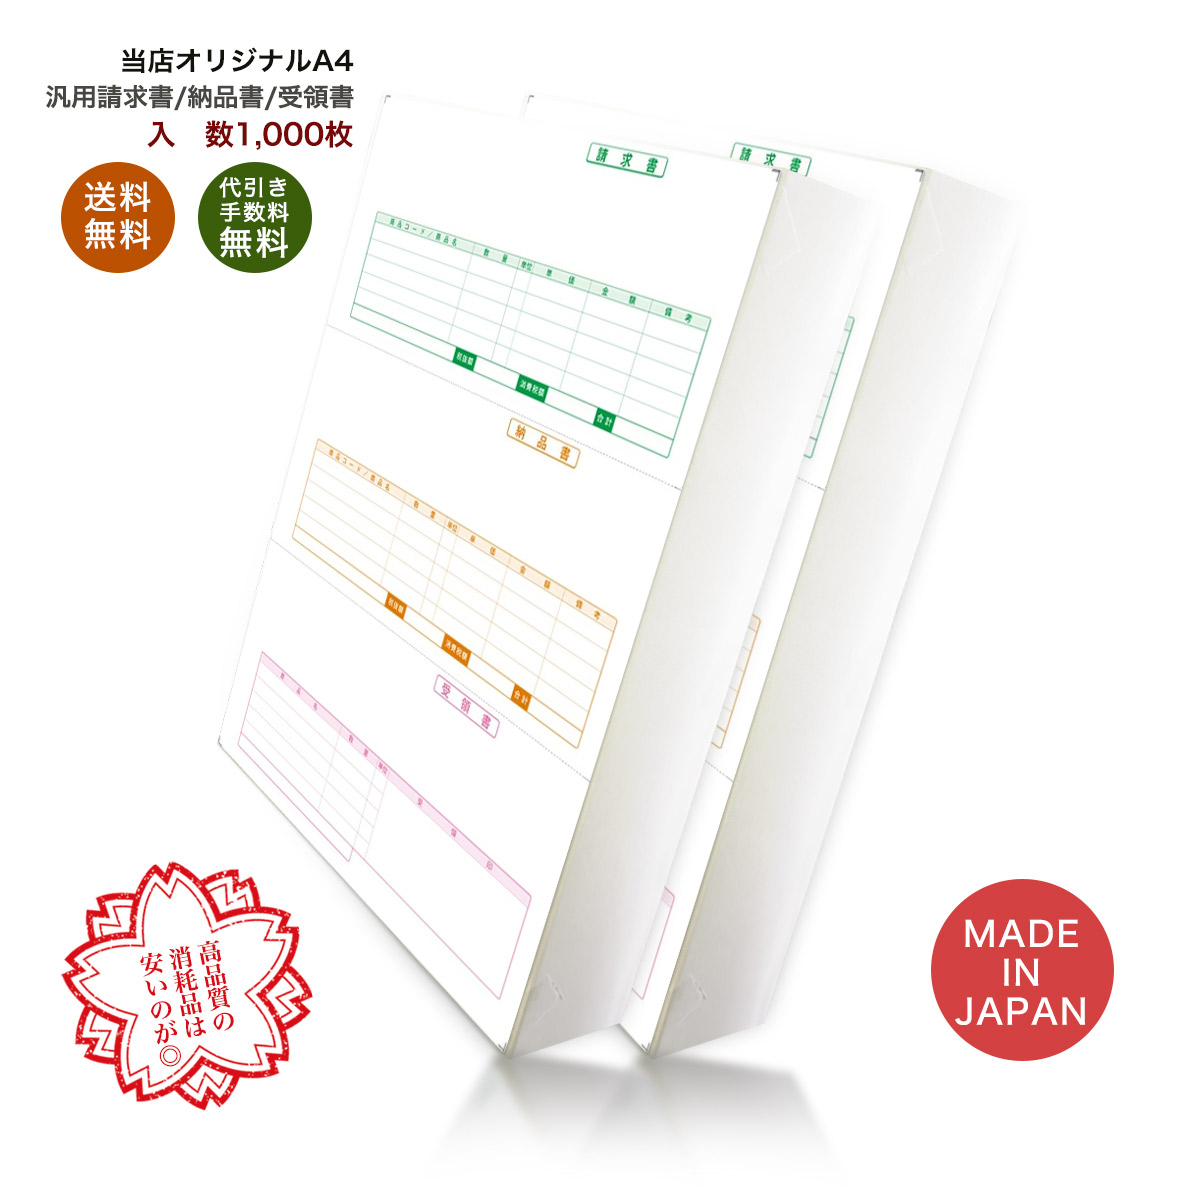 事務用品のユウカリ 334302 汎用伝票 1,000枚 品番:INO-4302 送料無料 代引き手数料無料 安心の日本製 オリジナル 伝票 業務用